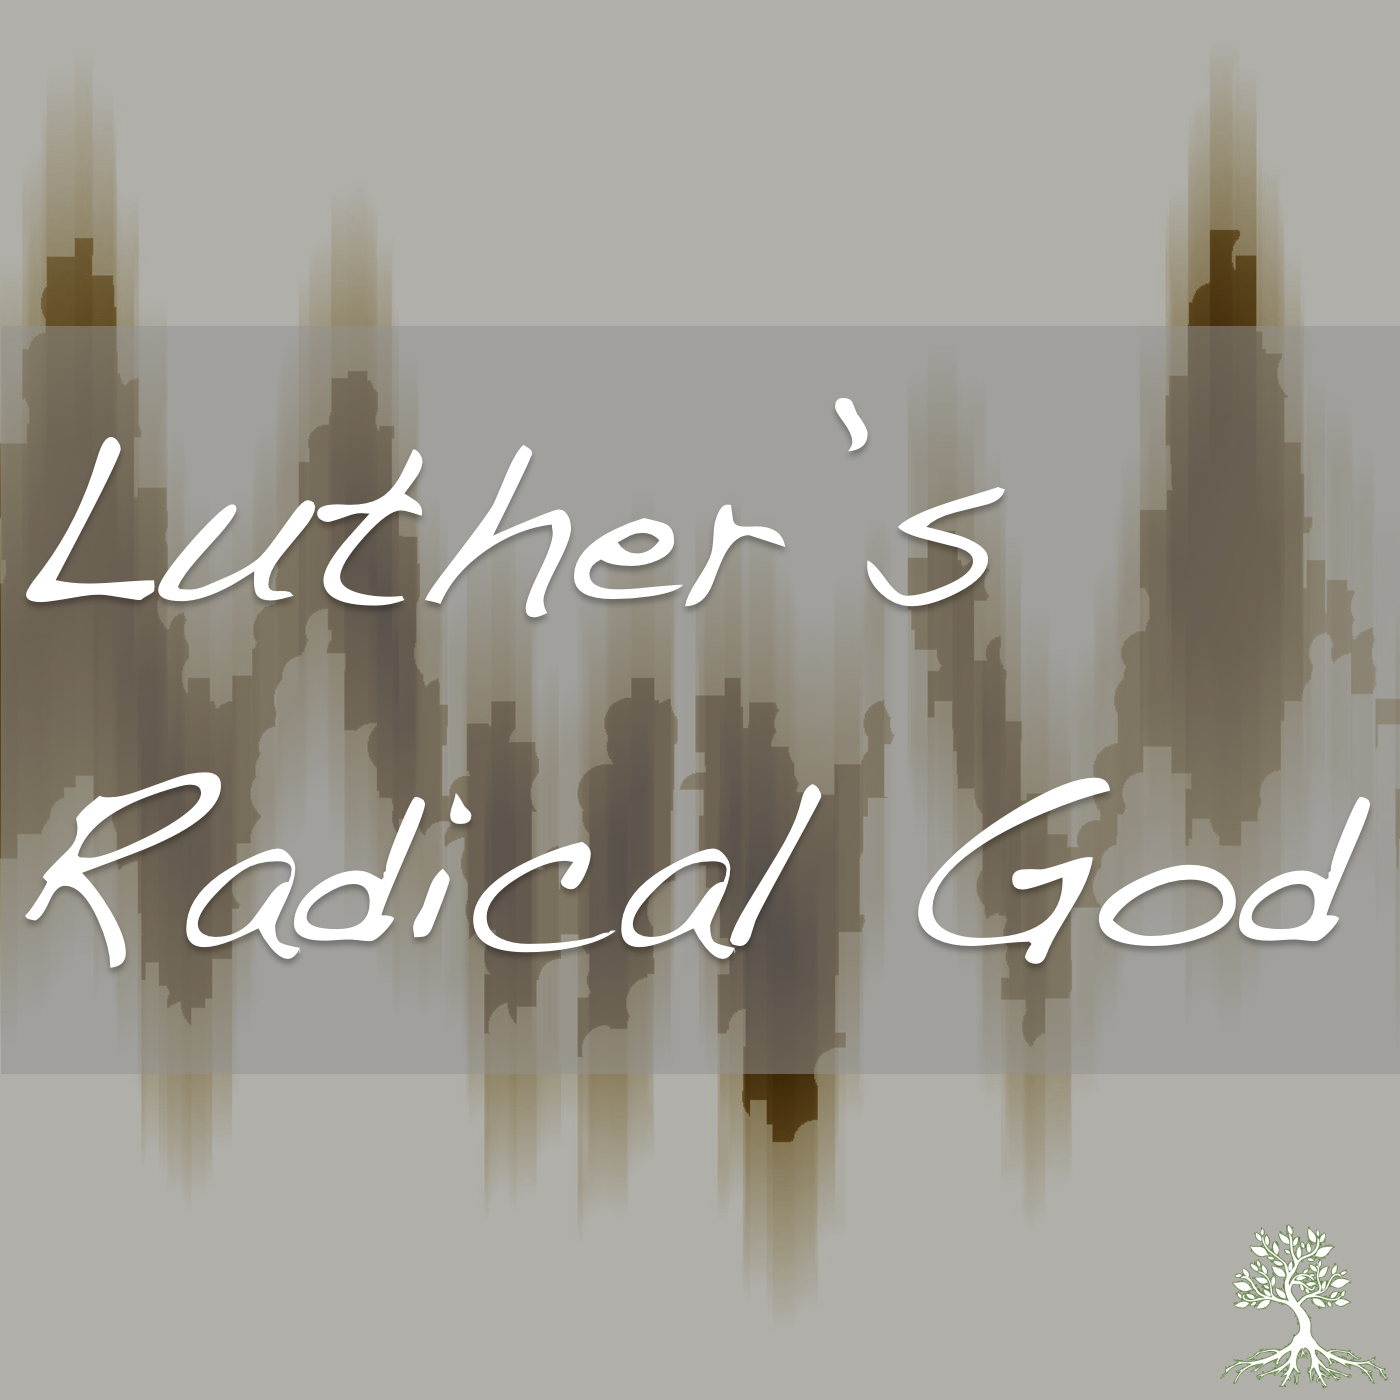 Luther’s Radical God (Mark Tranvik 7/19/17)